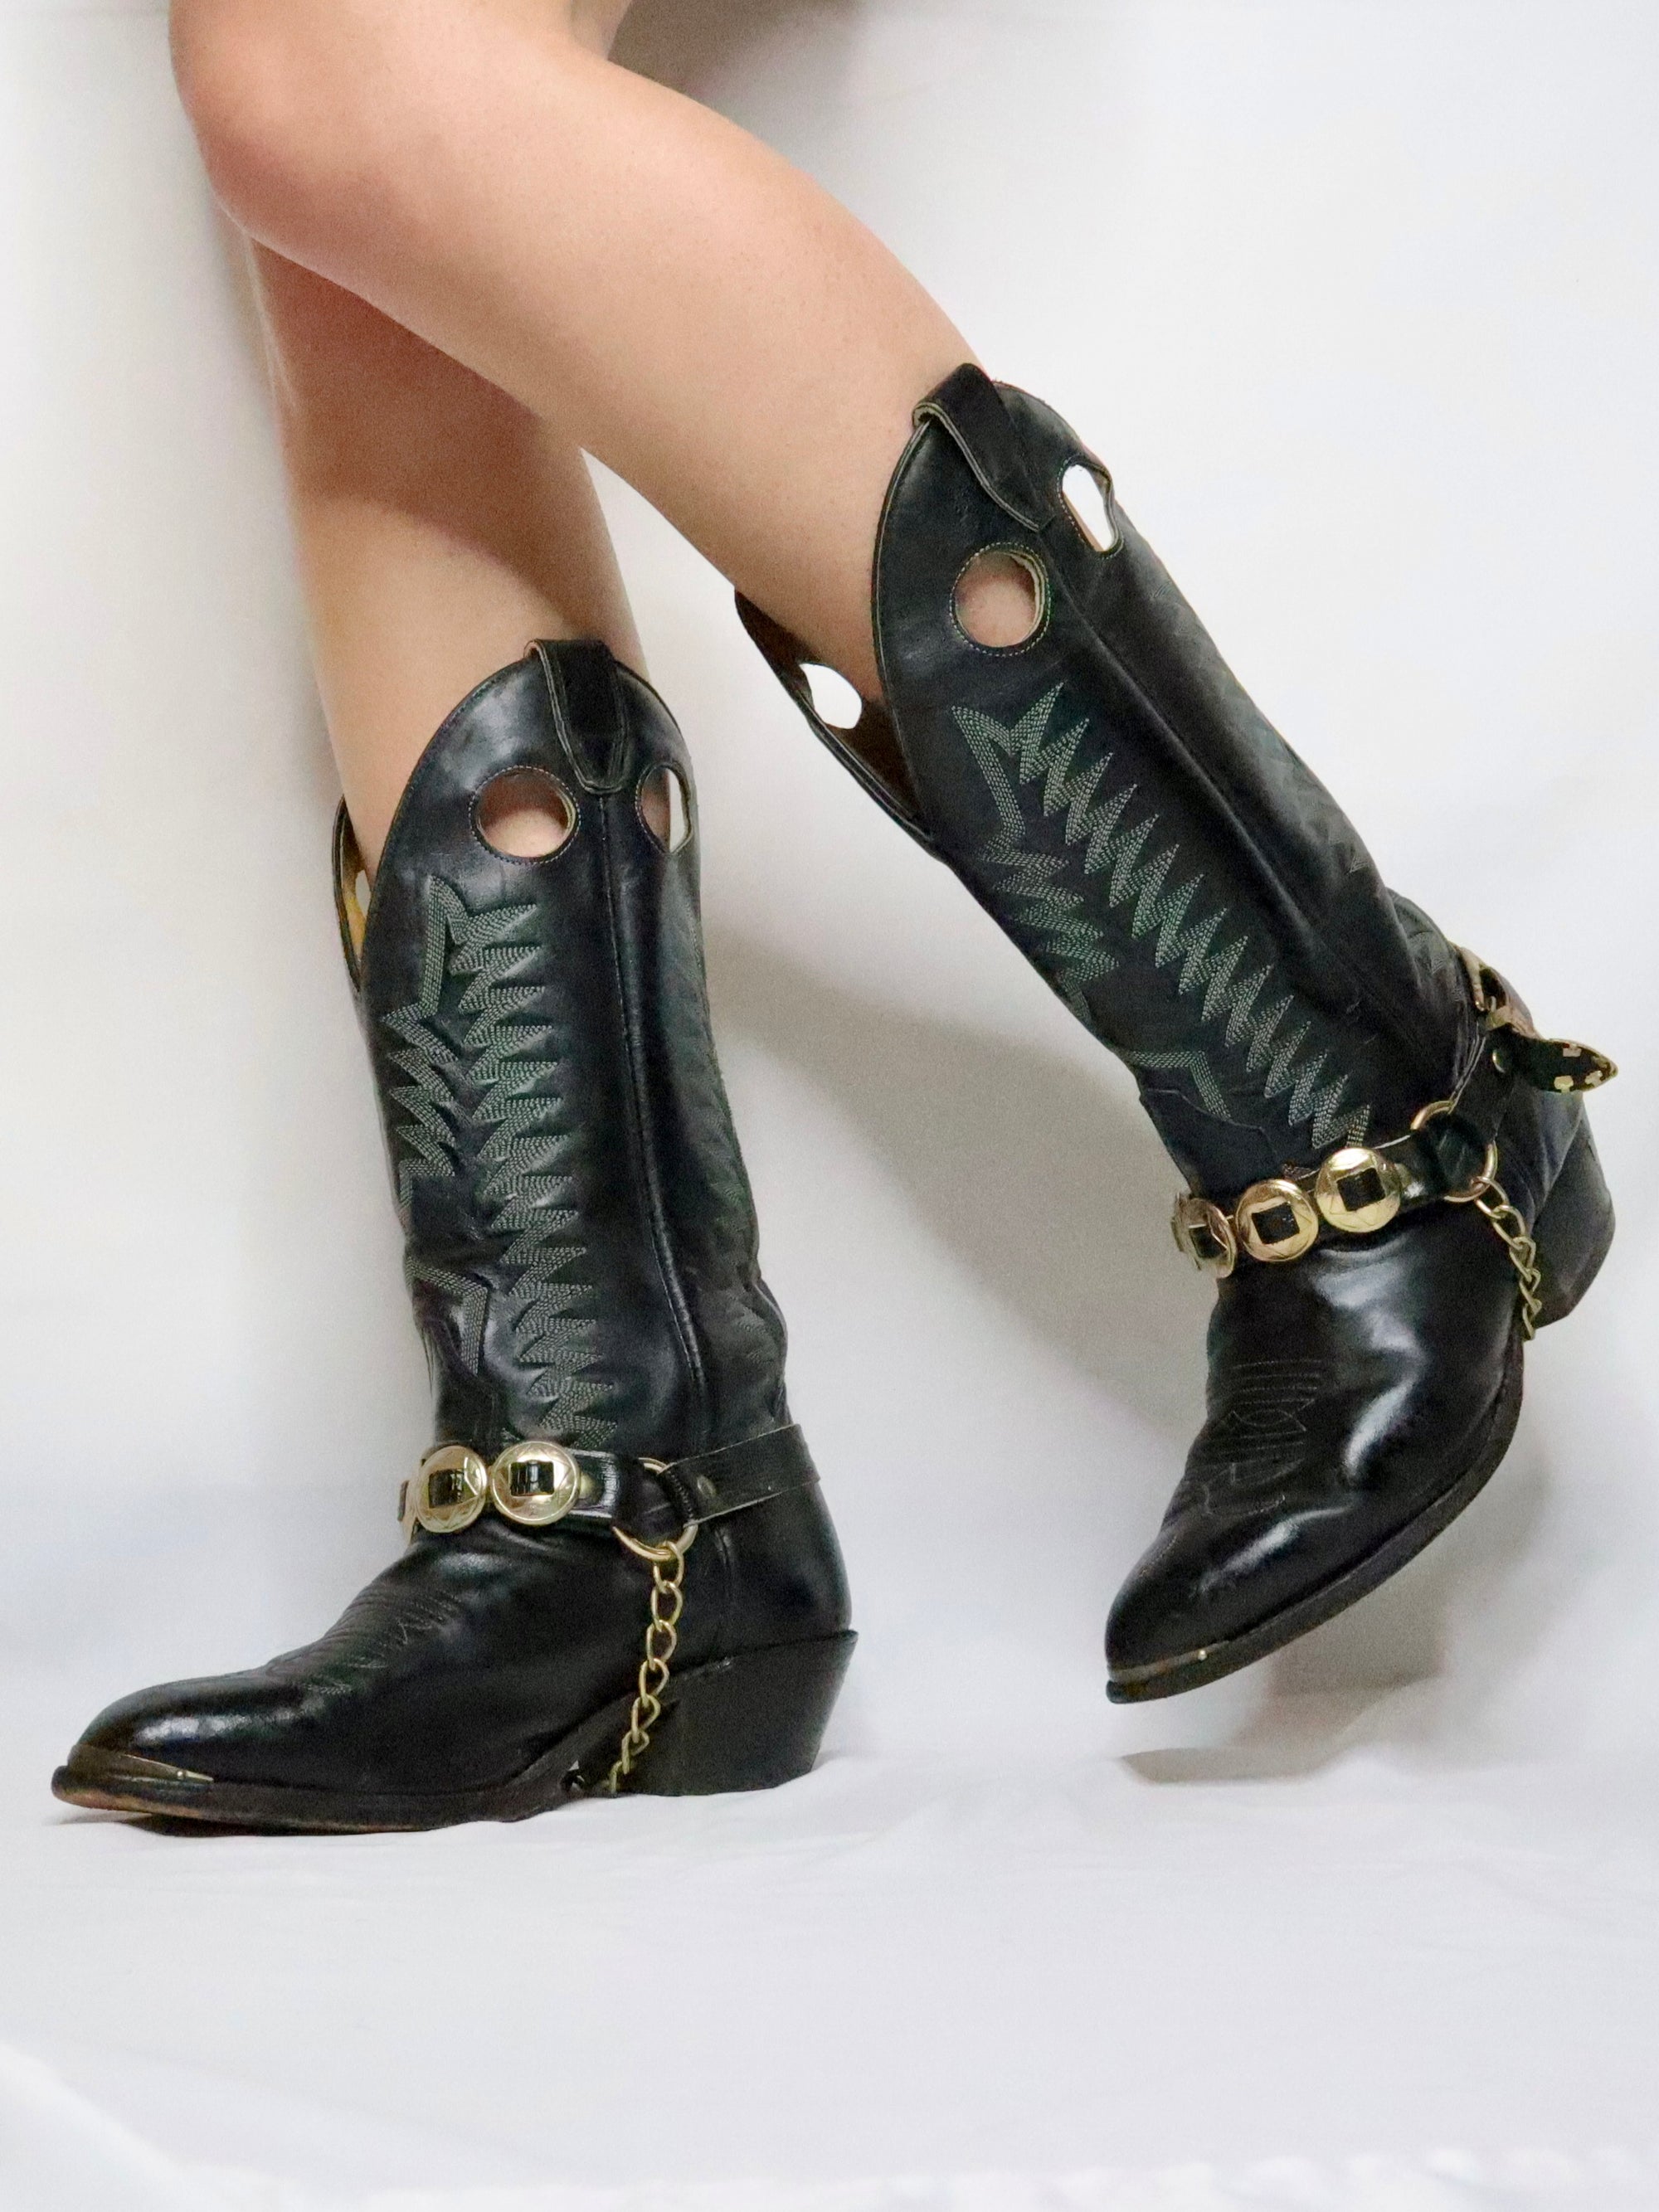 Black Cowboy Boots (8.5-9 US)